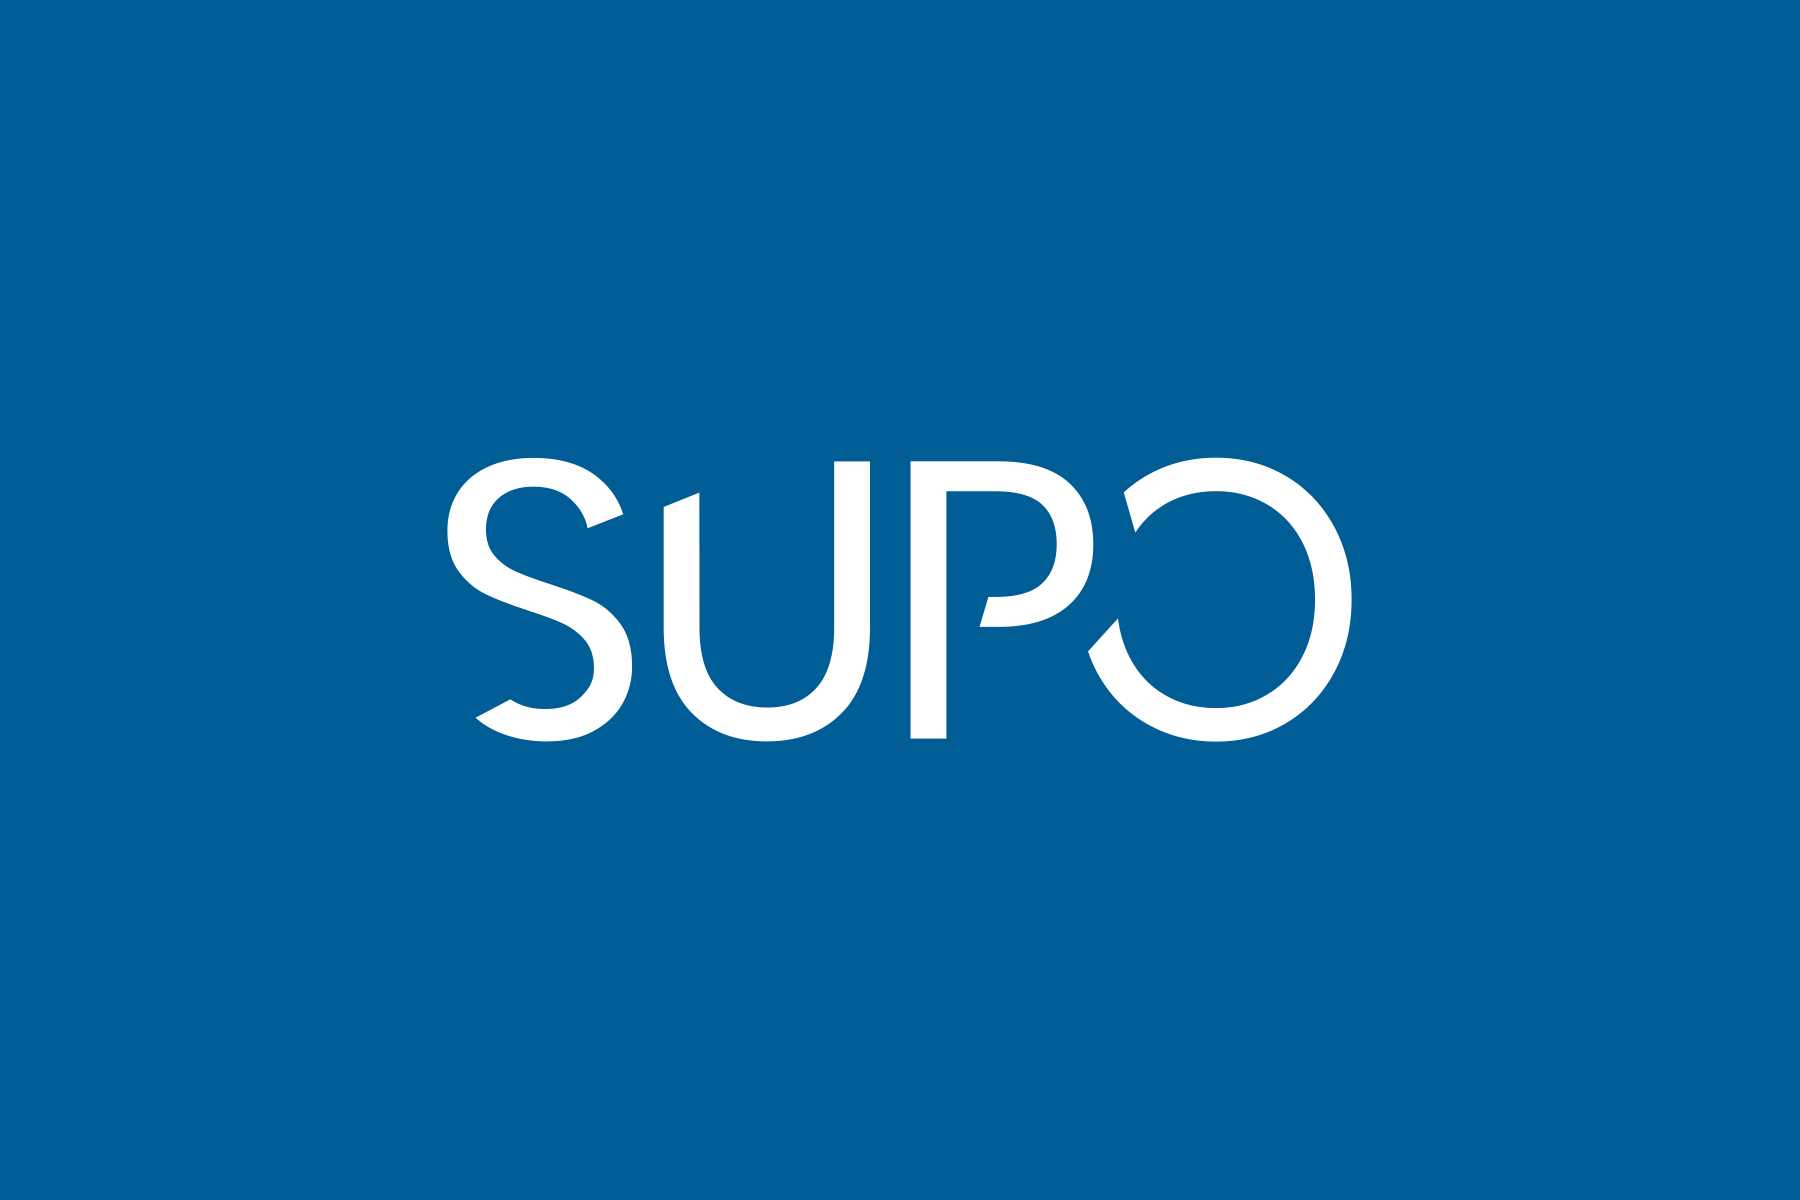 Valkoinen Supo-logo sinisellä taustalla.